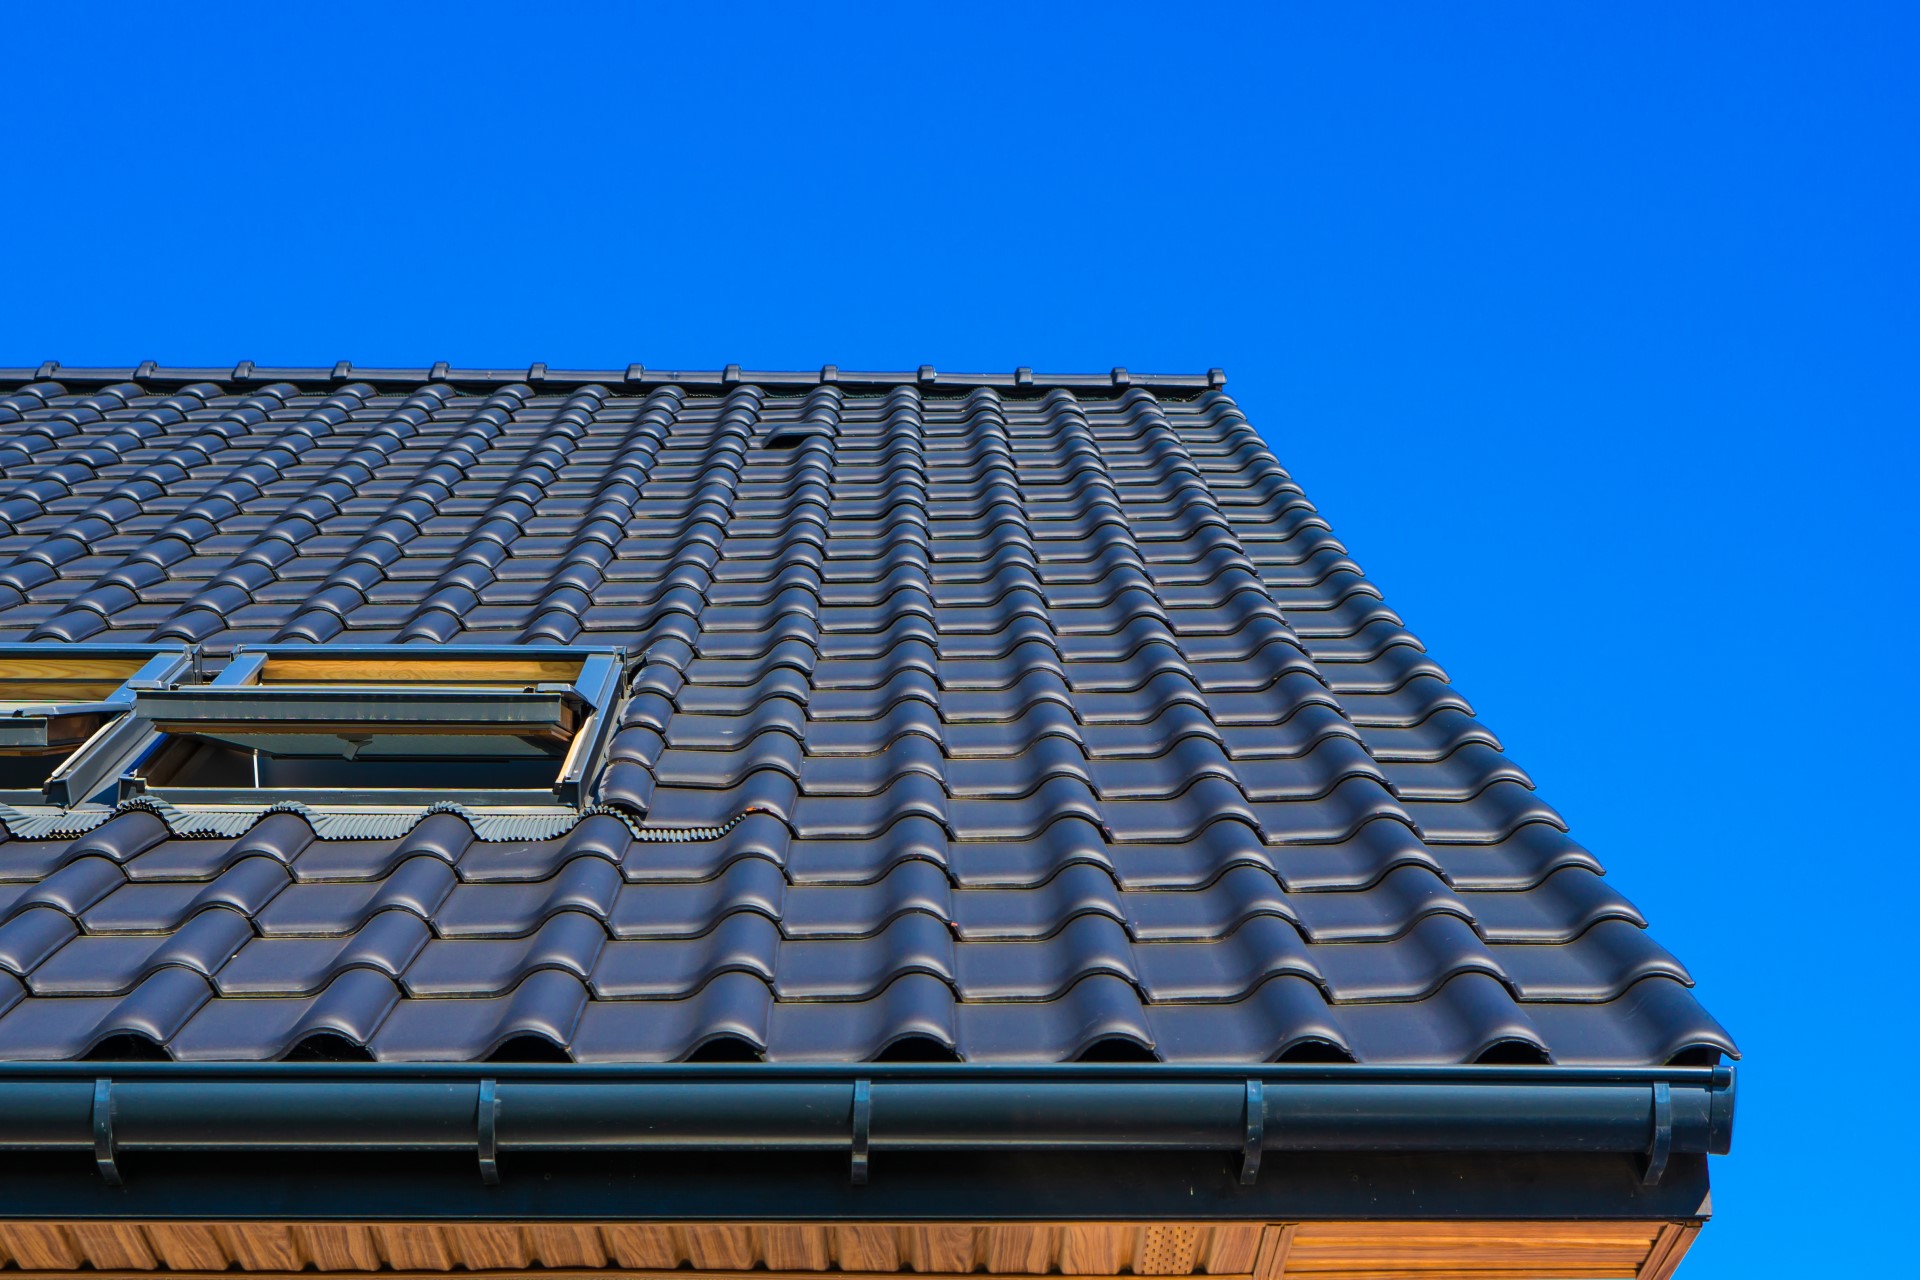 Dachówka ceramiczna to jedno z częściej wybieranych rodzajów pokrycia dachu